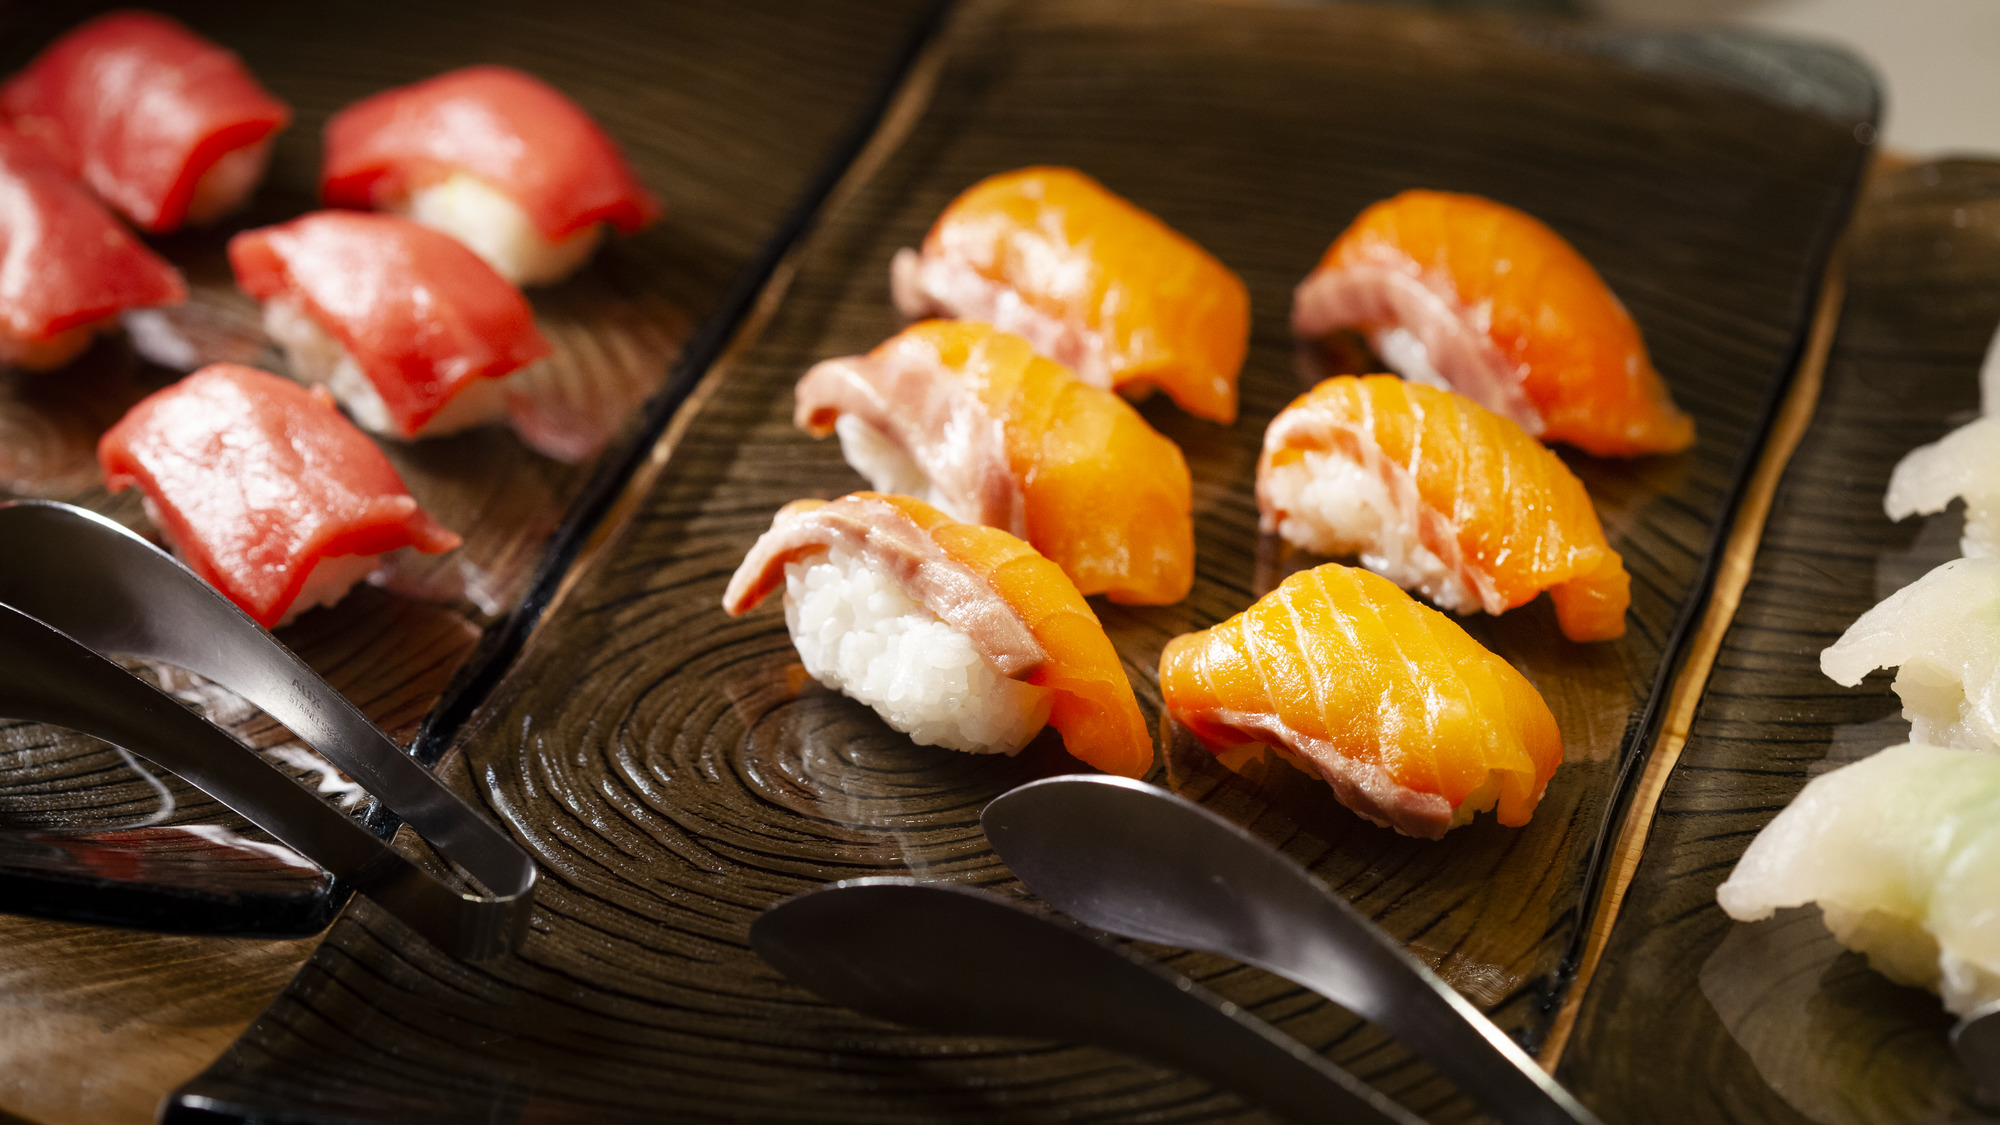 豊洲直送の鮮魚を使用したお寿司コーナーでは目の前で握ったお寿司をご提供。